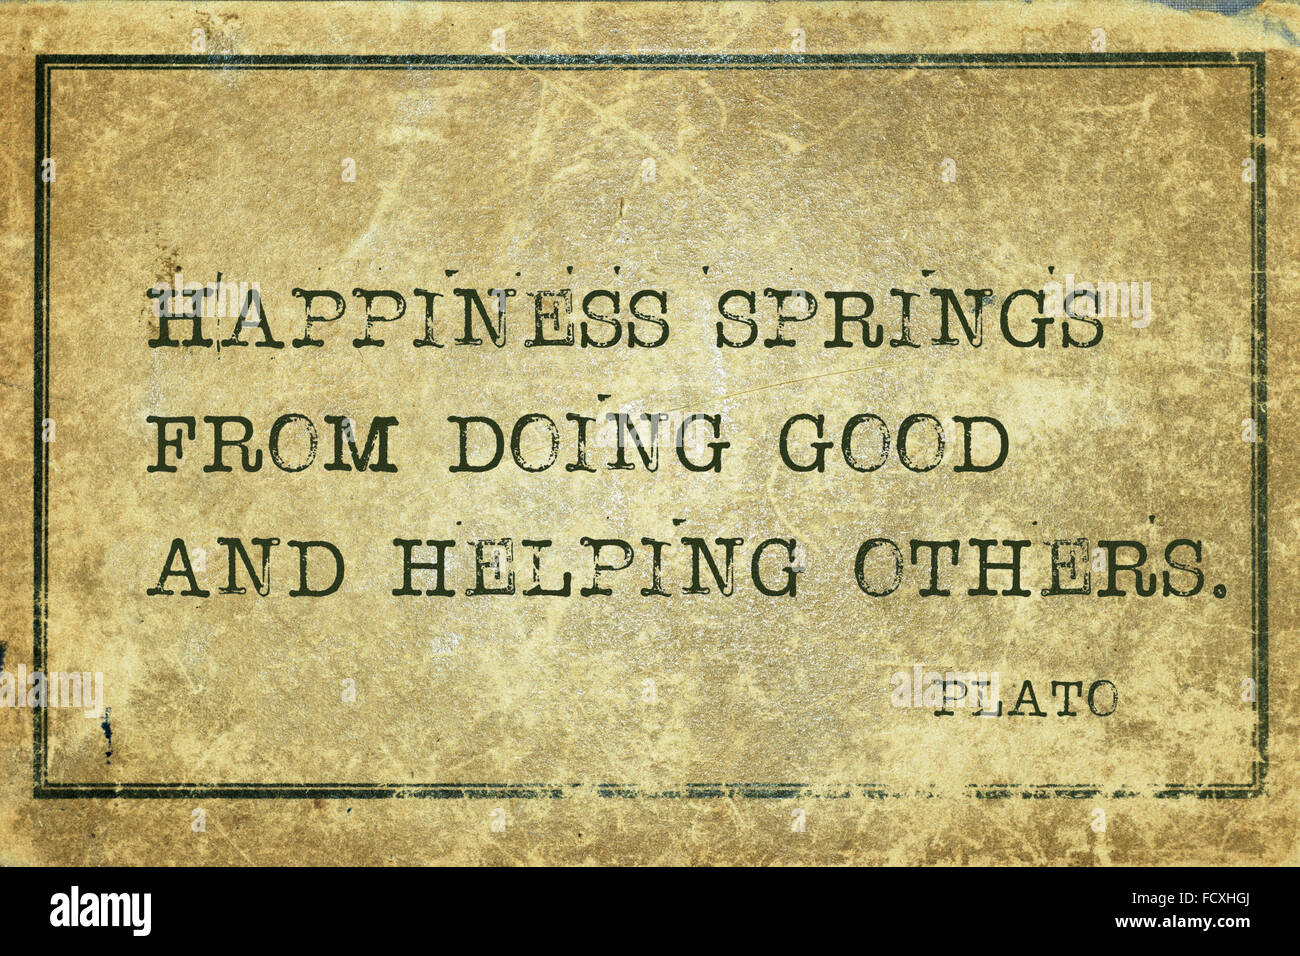 Glück entspringt etwas Gutes tun - der griechische Philosoph Plato Zitat auf Grunge Vintage Karton gedruckt Stockfoto